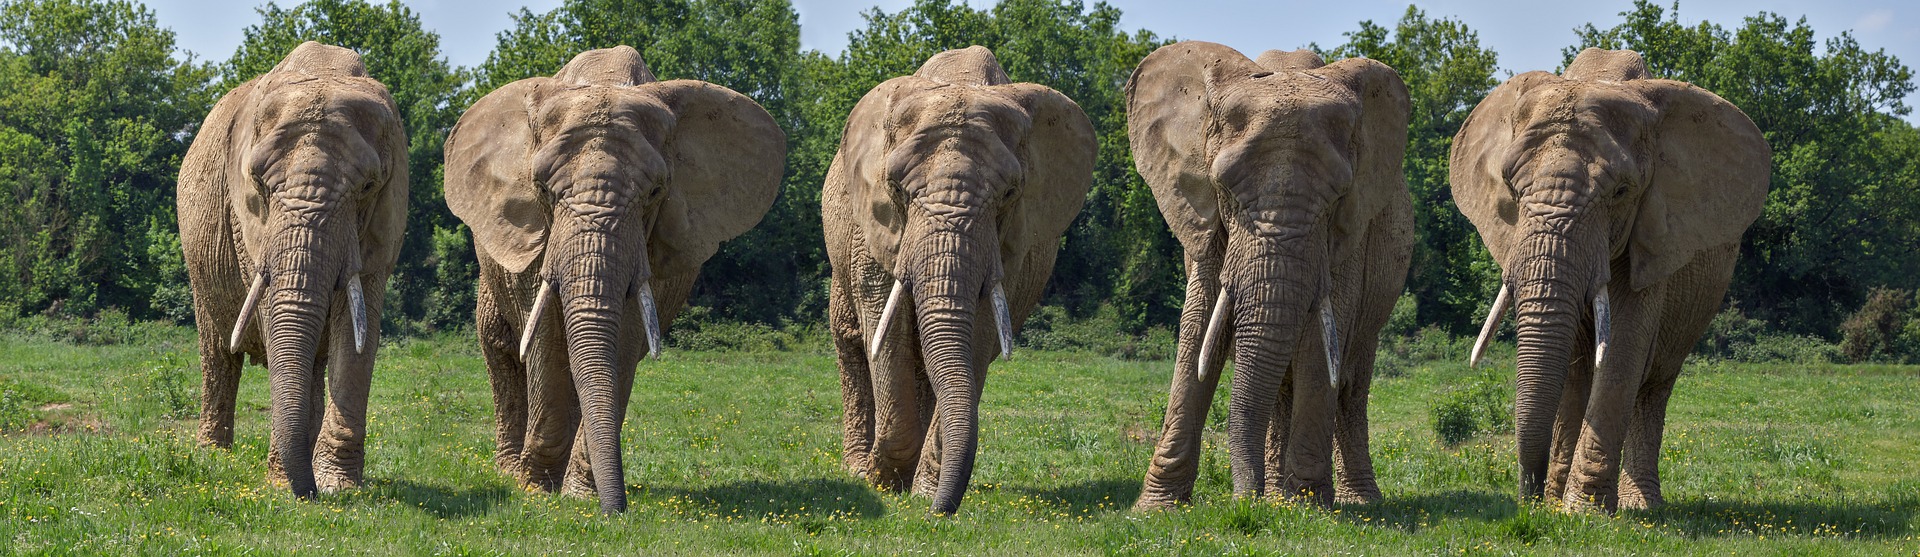 5 слоник. Пять слонов. Самый большой слон в мире. Популяция слонов. Много слонов.